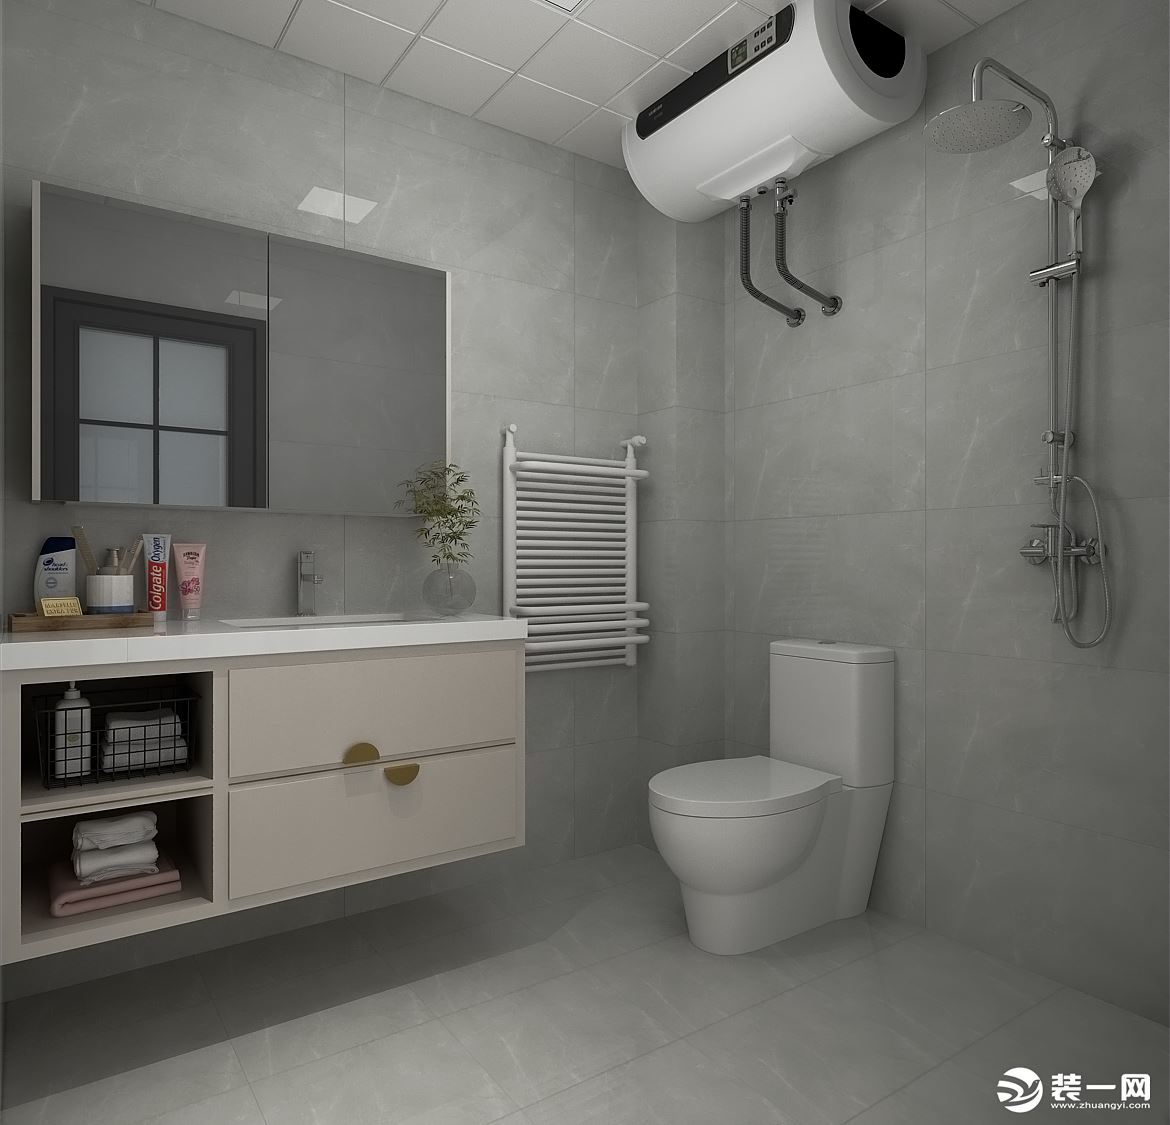 卫生间灰色墙砖突显出了整个空间的高级感，浴室柜上的乳白色木纹搭配金属元素，突显出高级的轻奢感。 